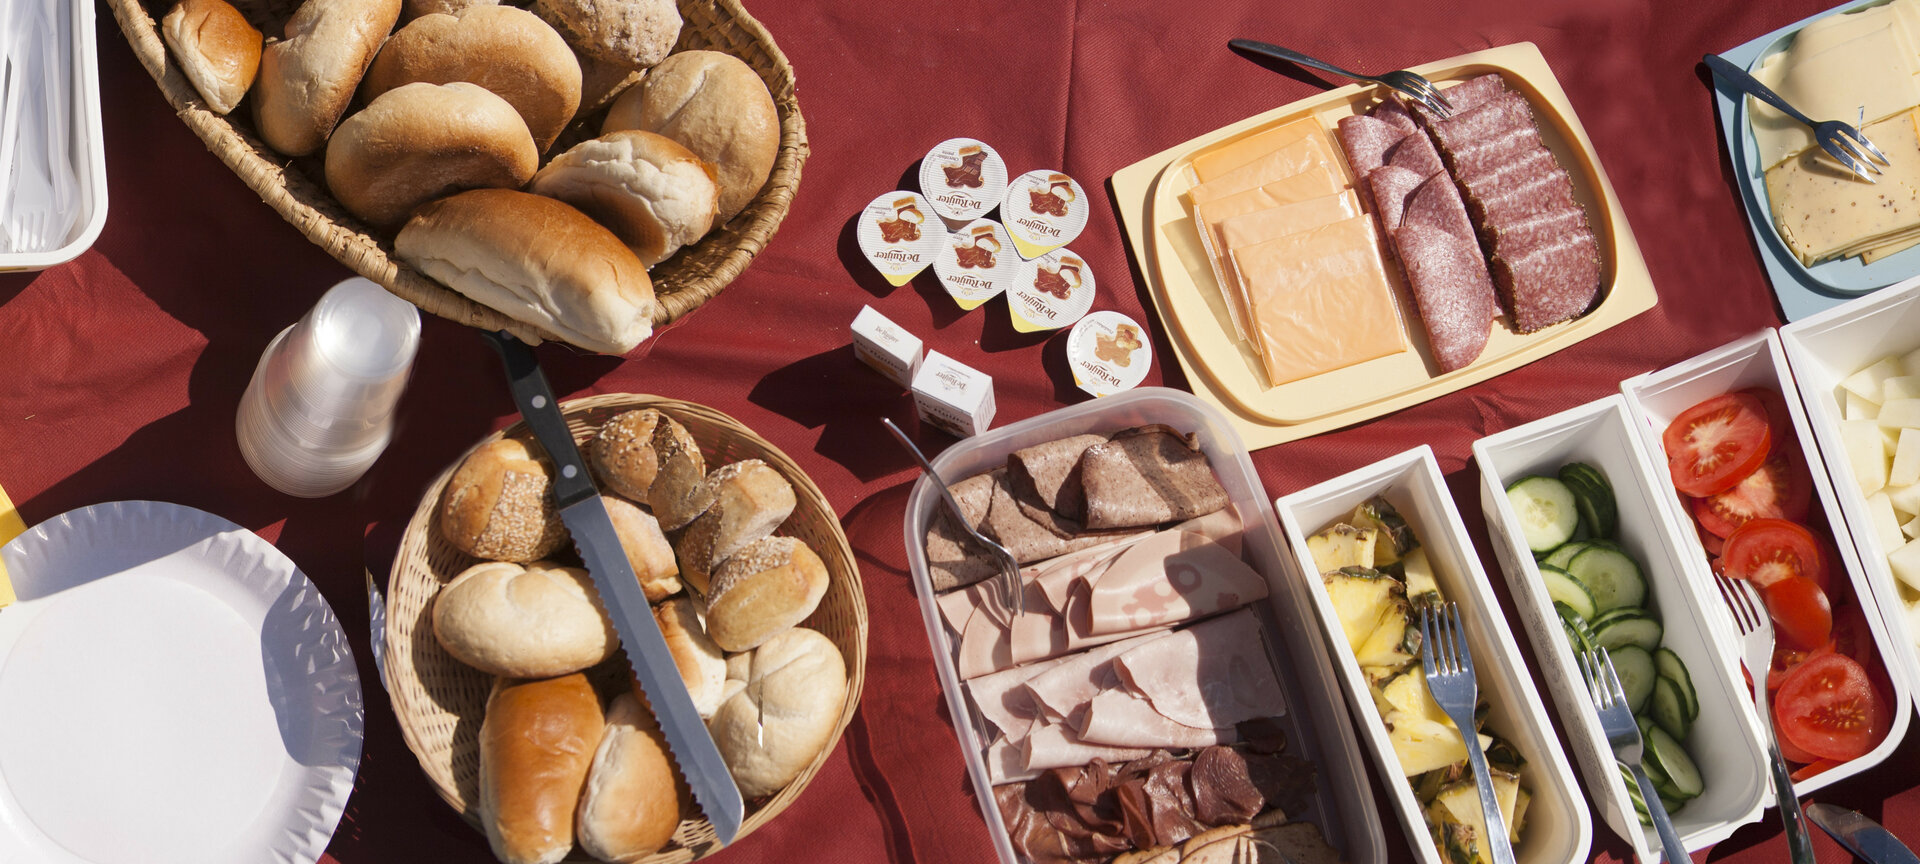 Belevingsvolle huifkartocht Peer - een uitgebreide picknick om de hongerige magen te stillen